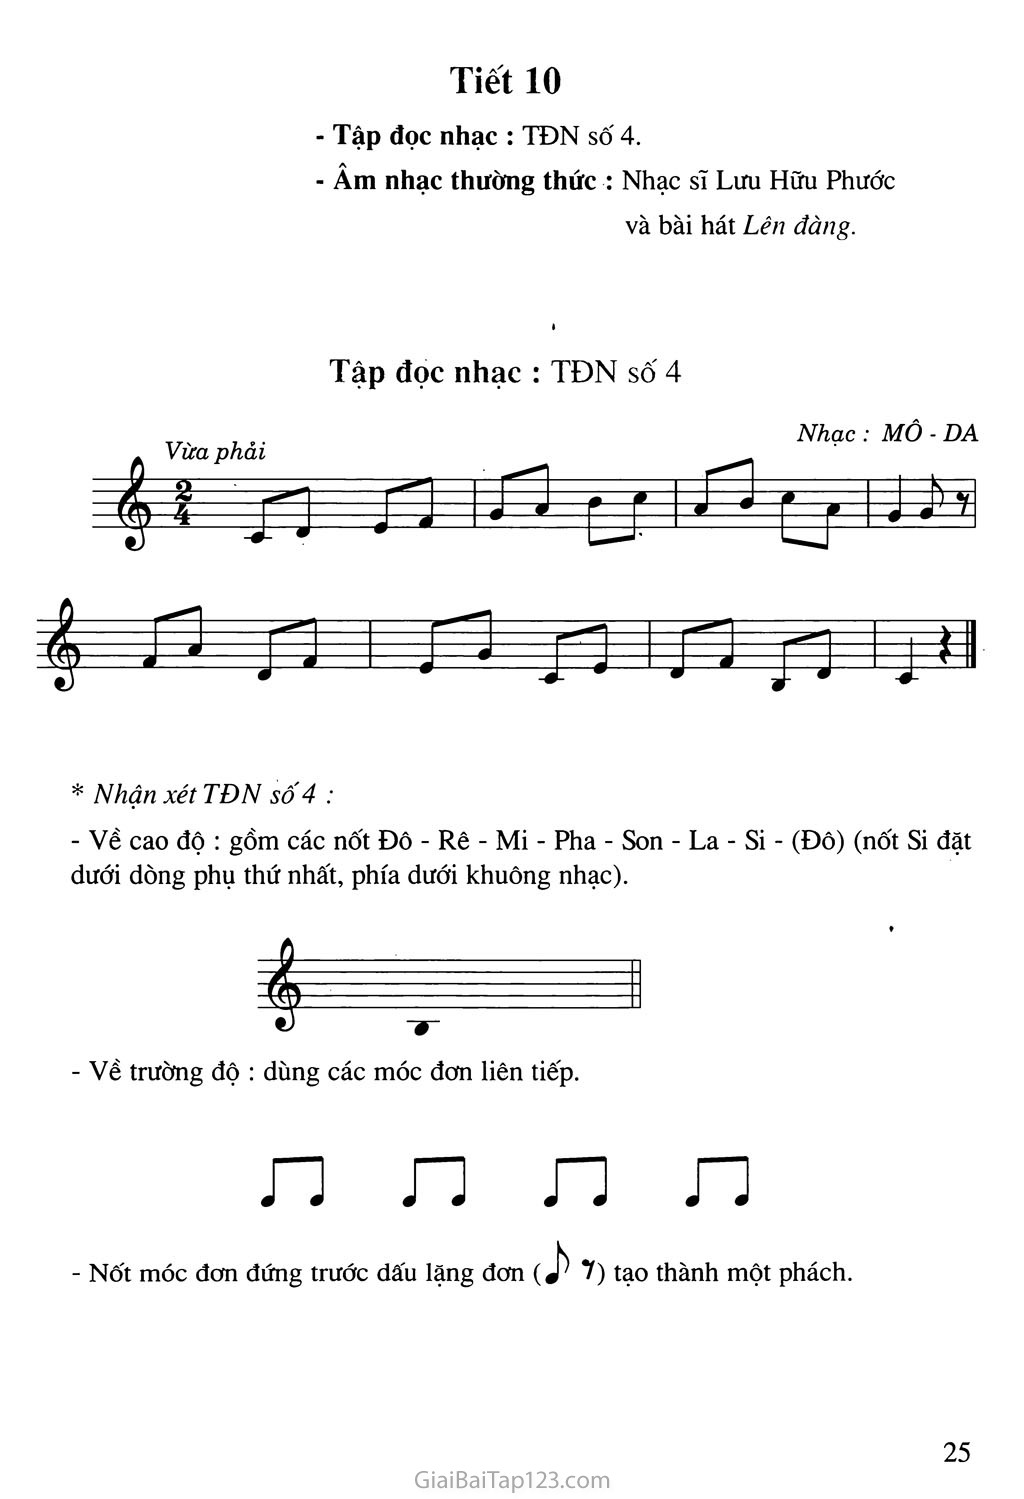 Tiết 10. Tập đọc nhạc: TĐN số 4. Âm nhạc thưởng thức: Nhạc sĩ Lưu Hữu Phước và bài hát Lên đàng trang 1